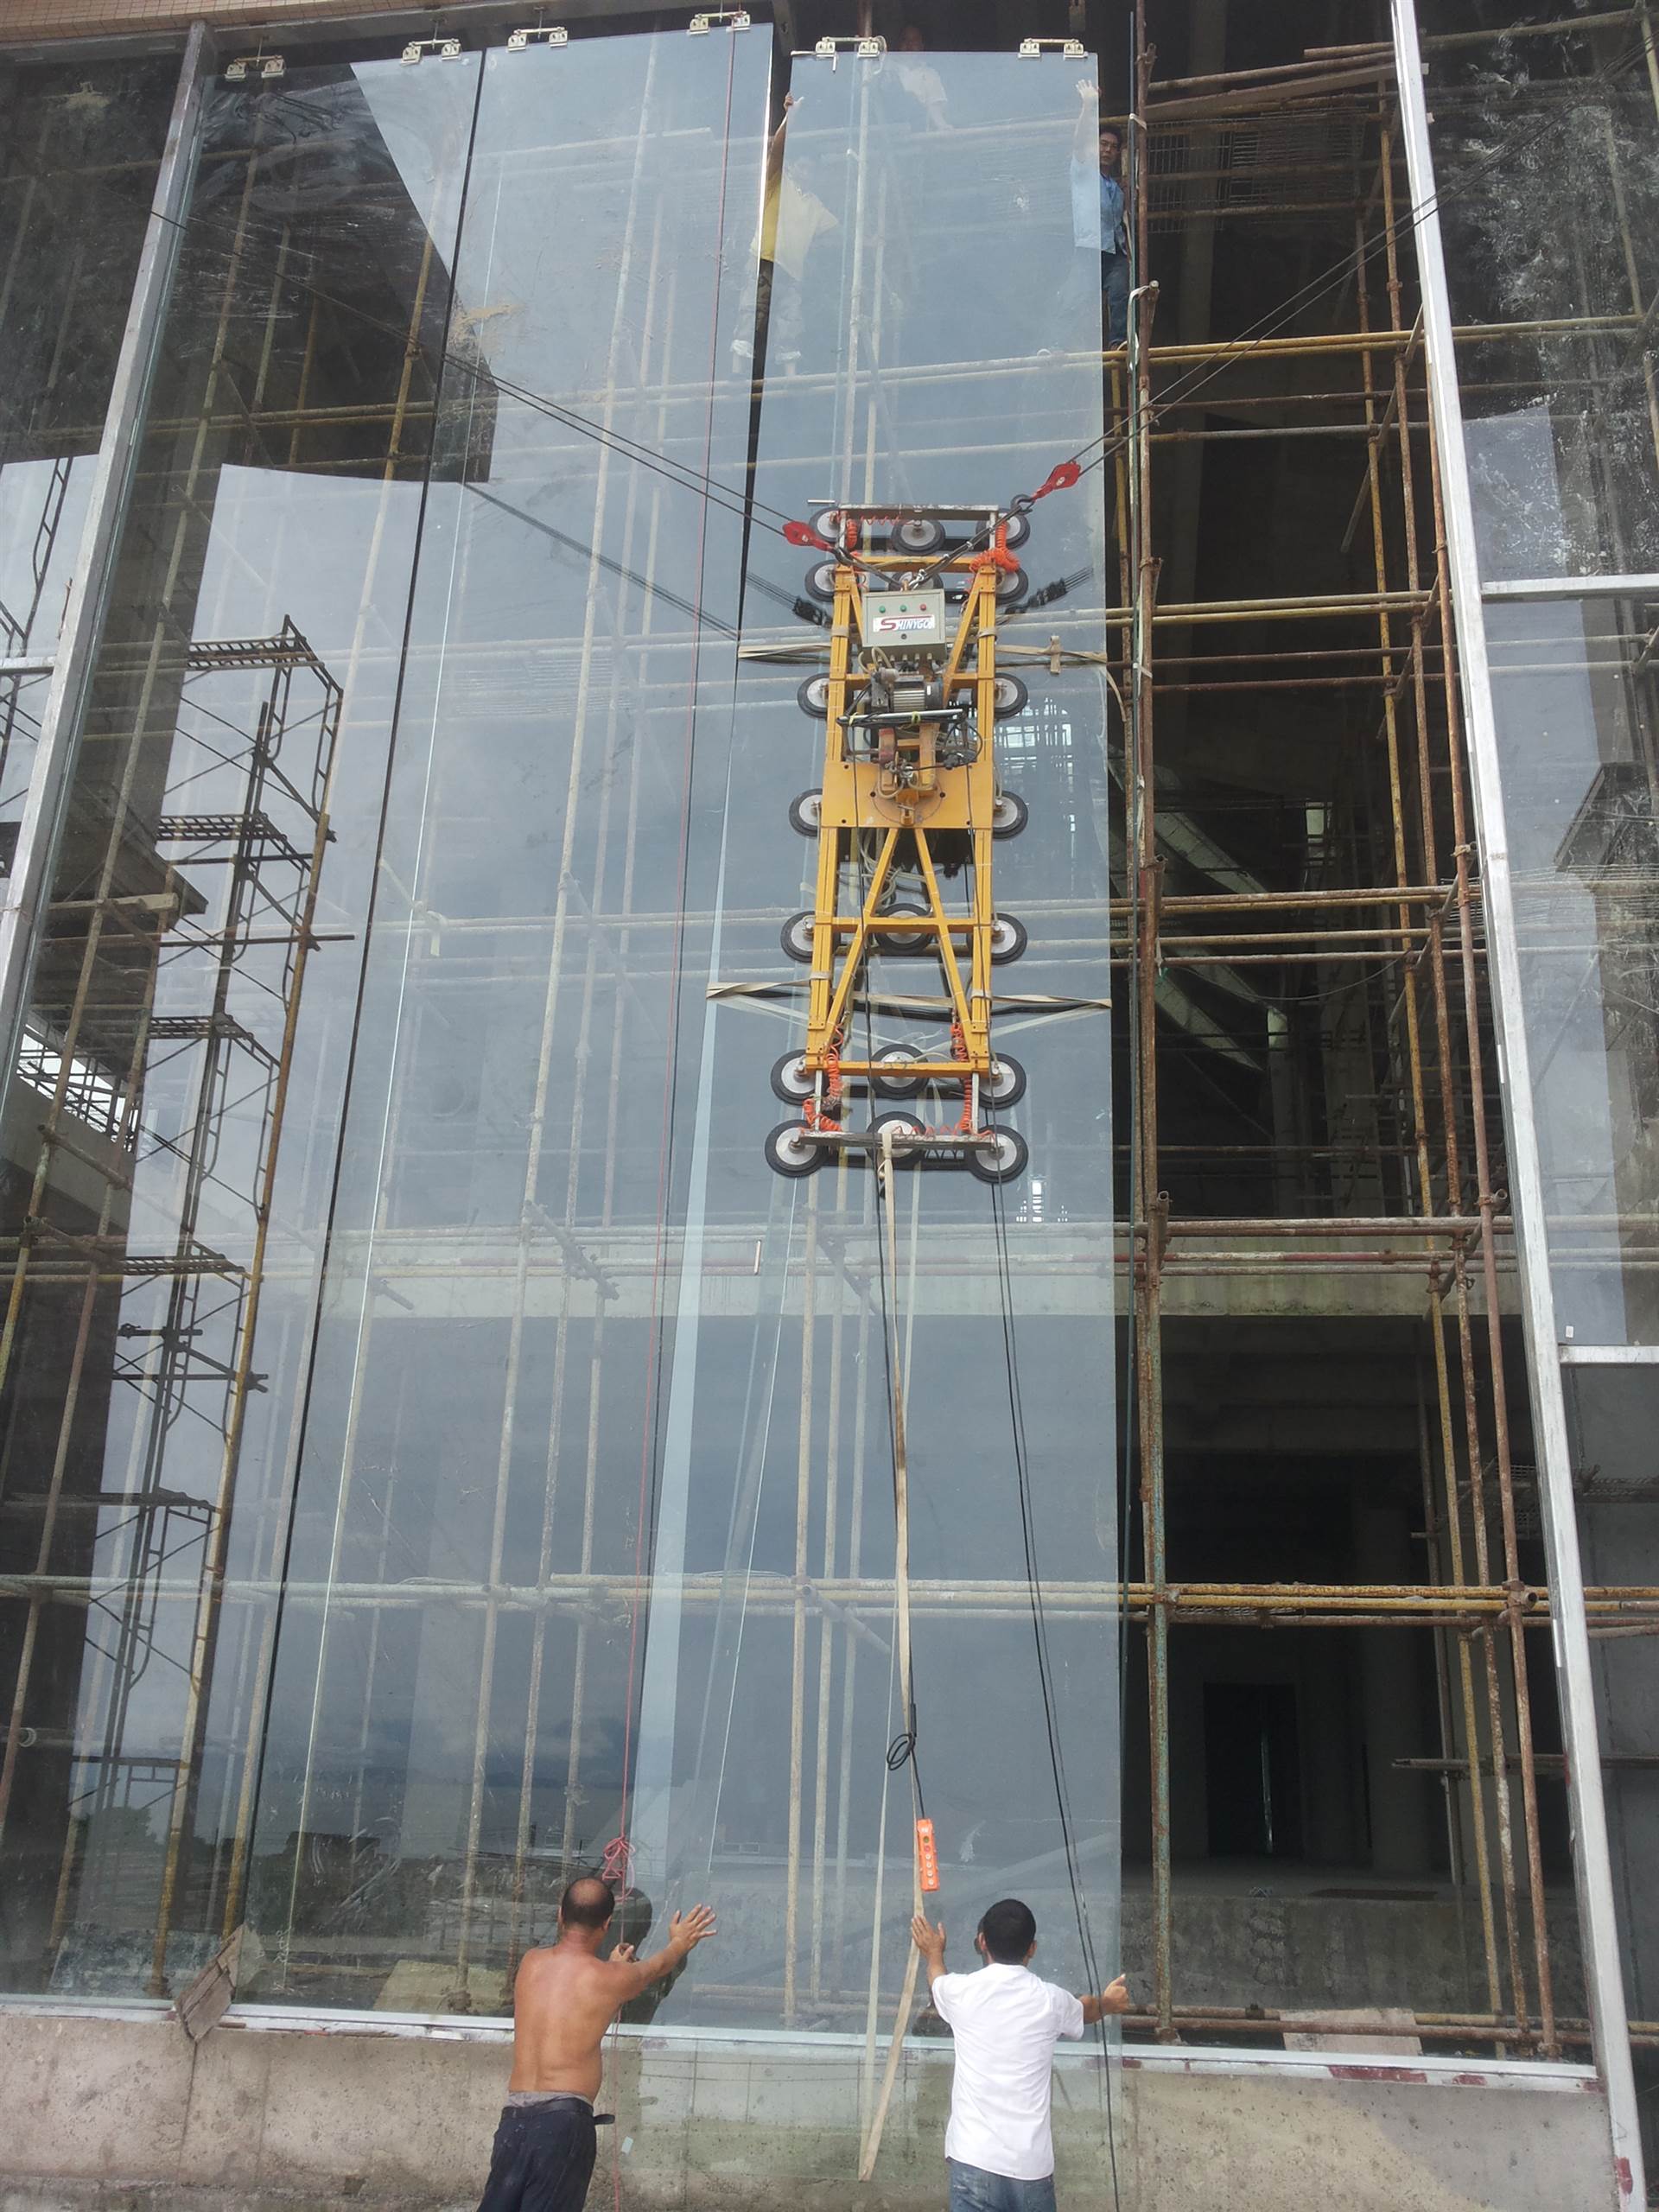 深圳玻璃幕墙更换穿孔铝板玻璃幕墙施工玻璃幕墙施工要注意的事项如下